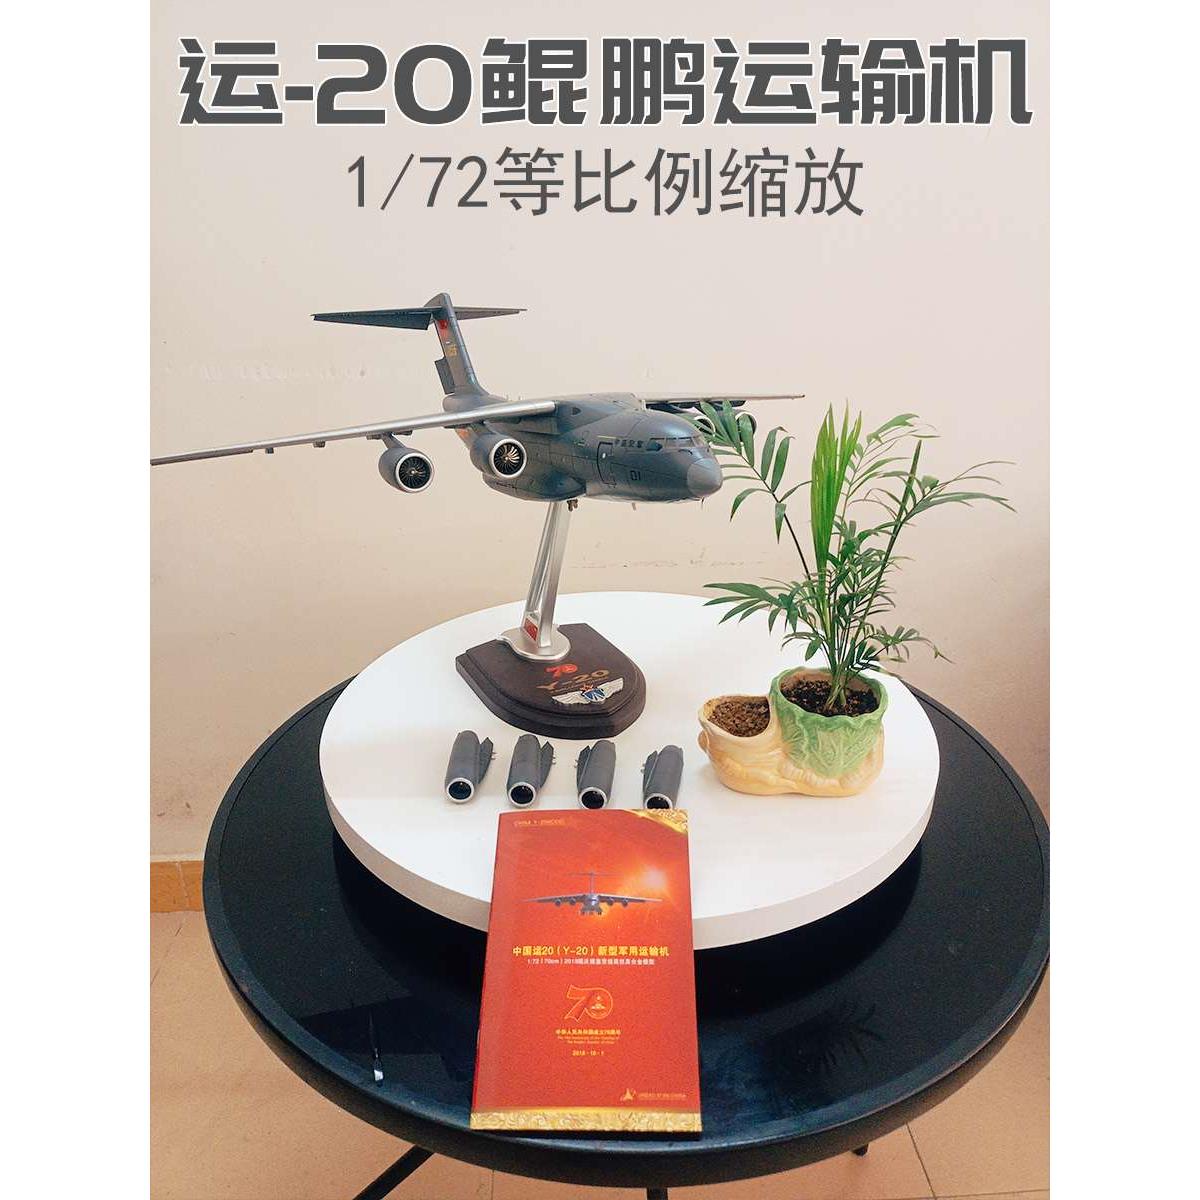 新品1:72中国大型运20运输机合金仿真模型 运20Y-20飞机成品摆件